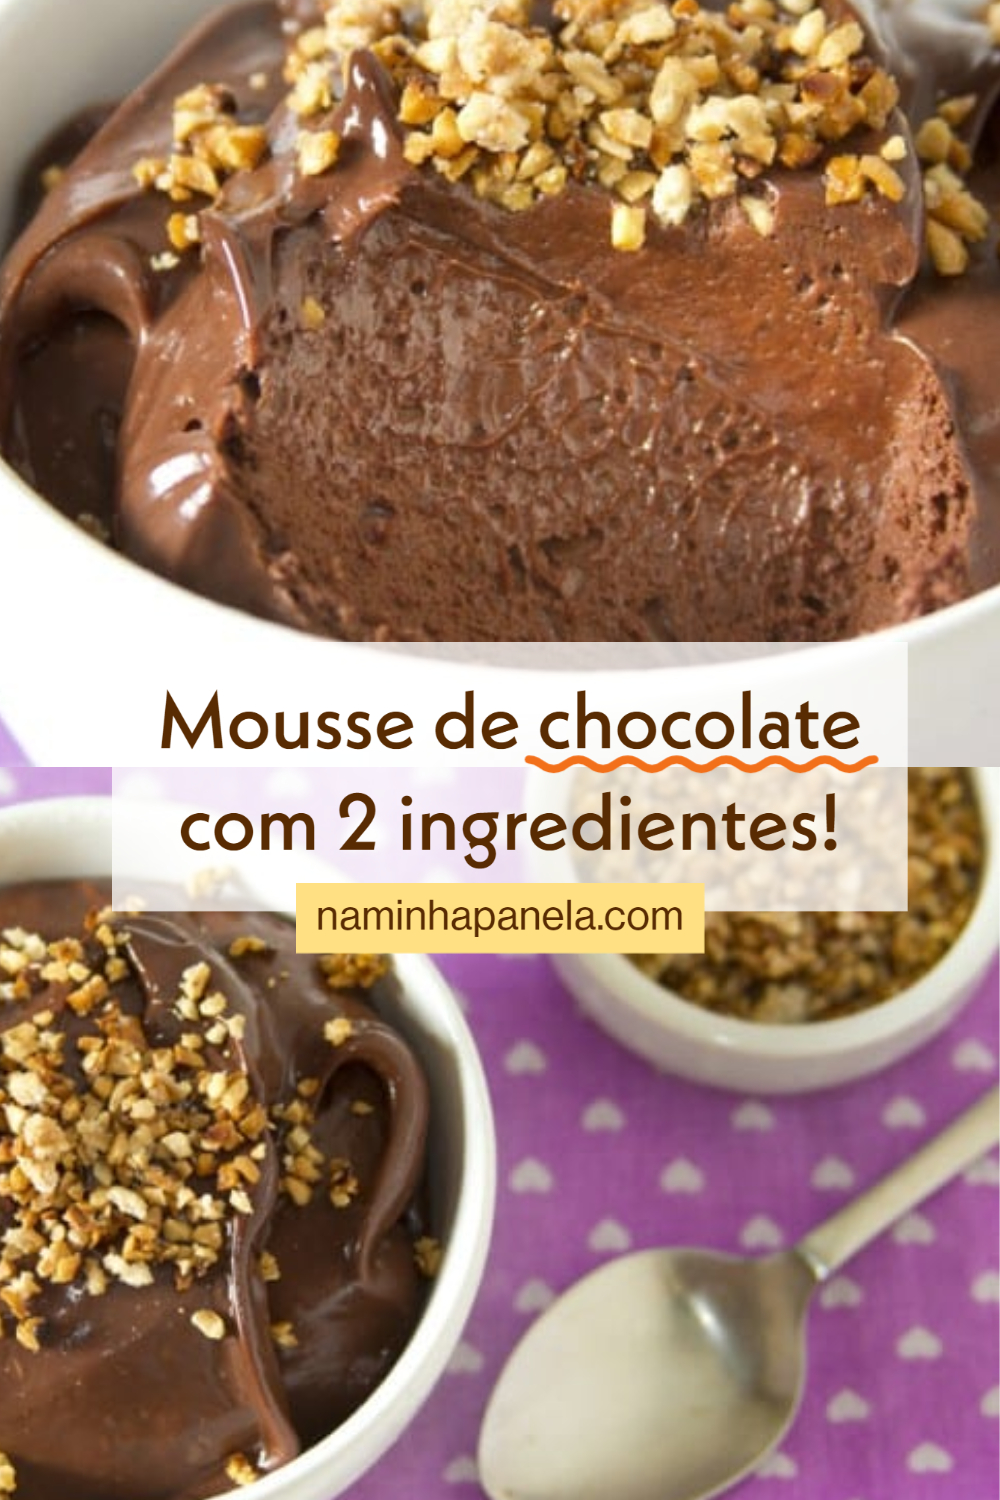 mousse de chocolate com 2 ingredientes - naminhapanela